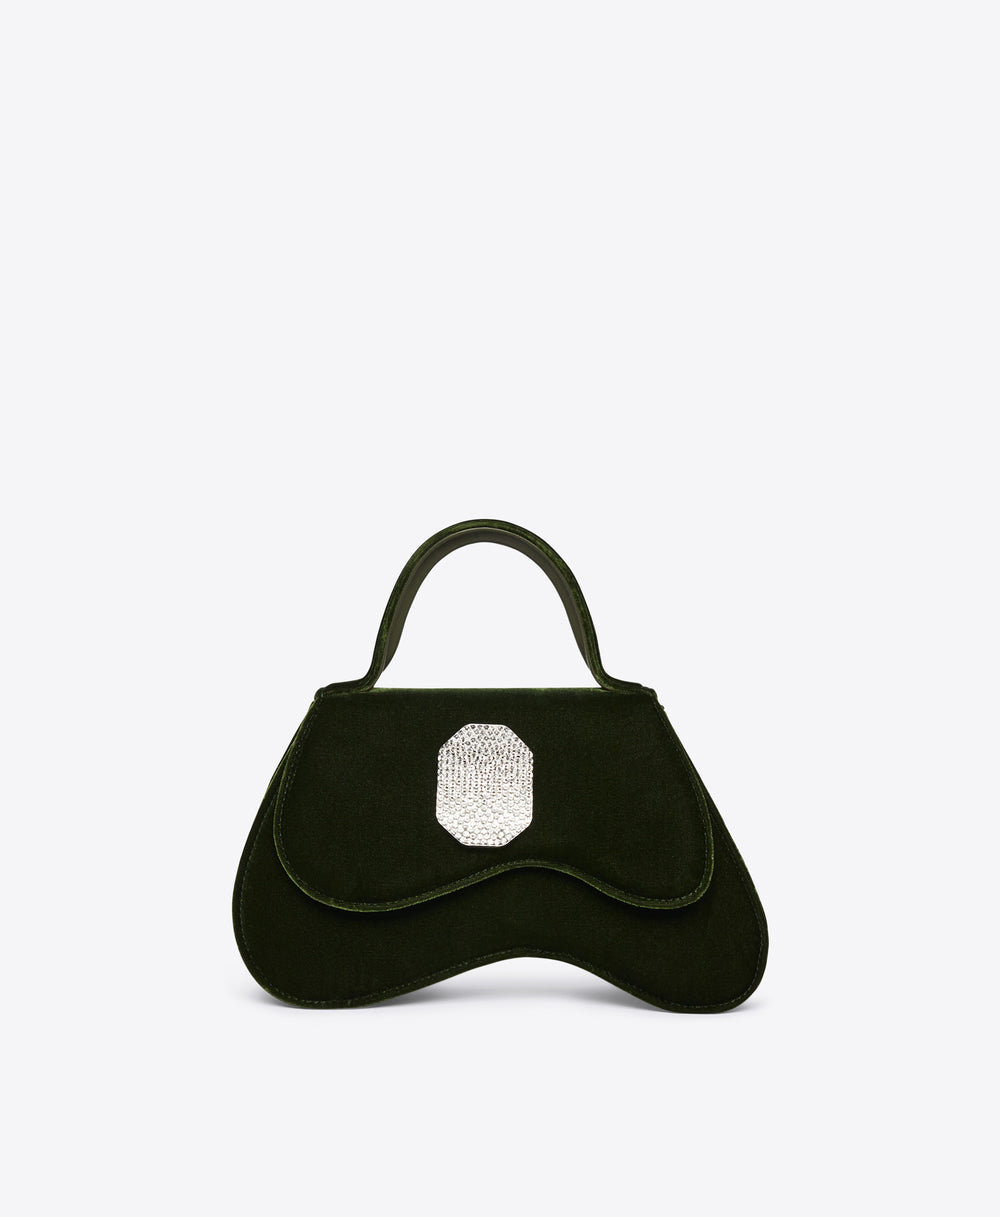 Small Designer Hand Bag Clutch